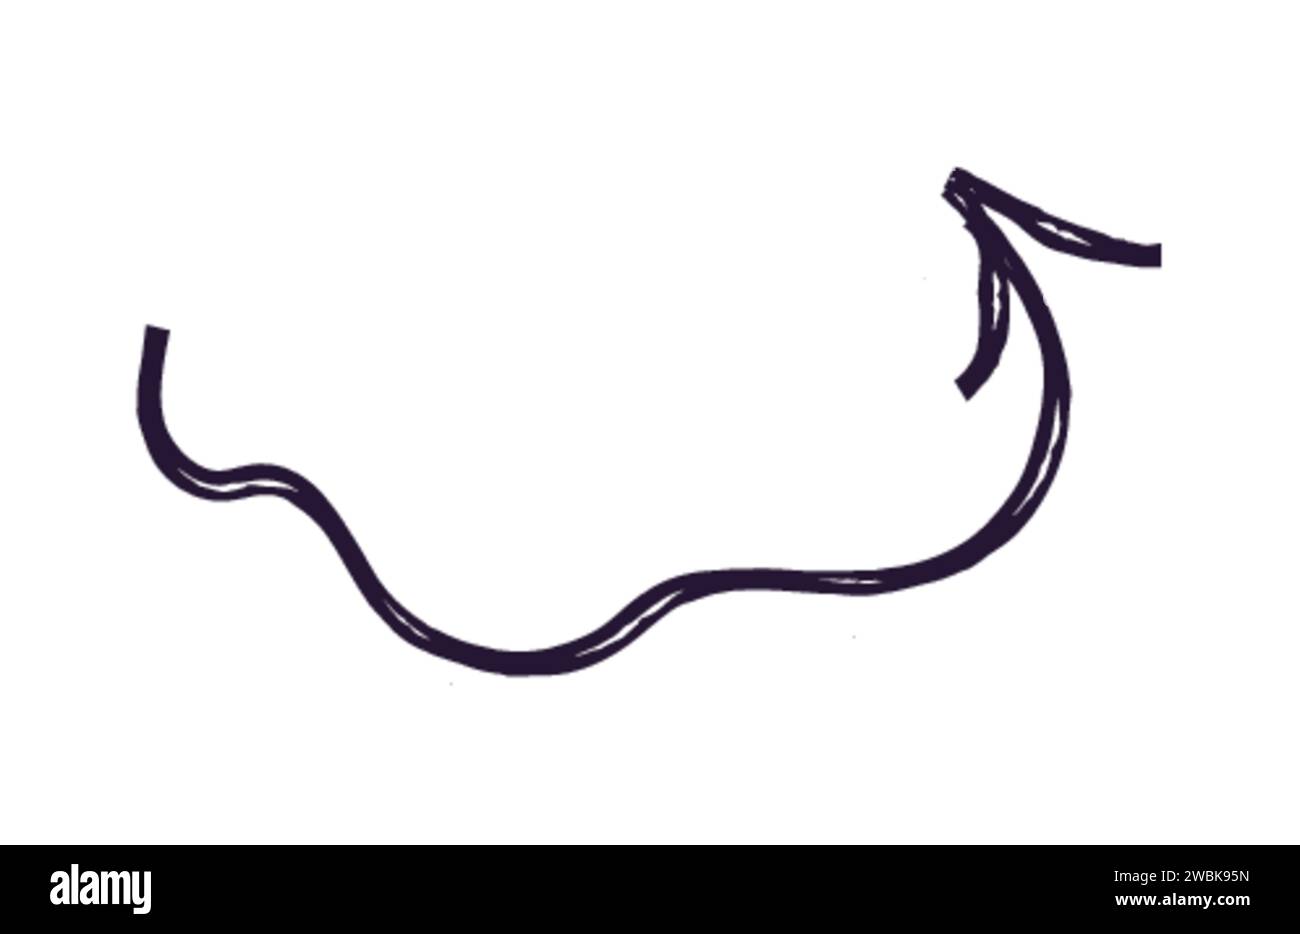 Freccia a forma di gesso di pastello disegnata a mano. freccia curvata e ondulata isolata su sfondo bianco. colpo di schiaffo o di scarabocchio. Elemento per diagrammi. VEC Illustrazione Vettoriale